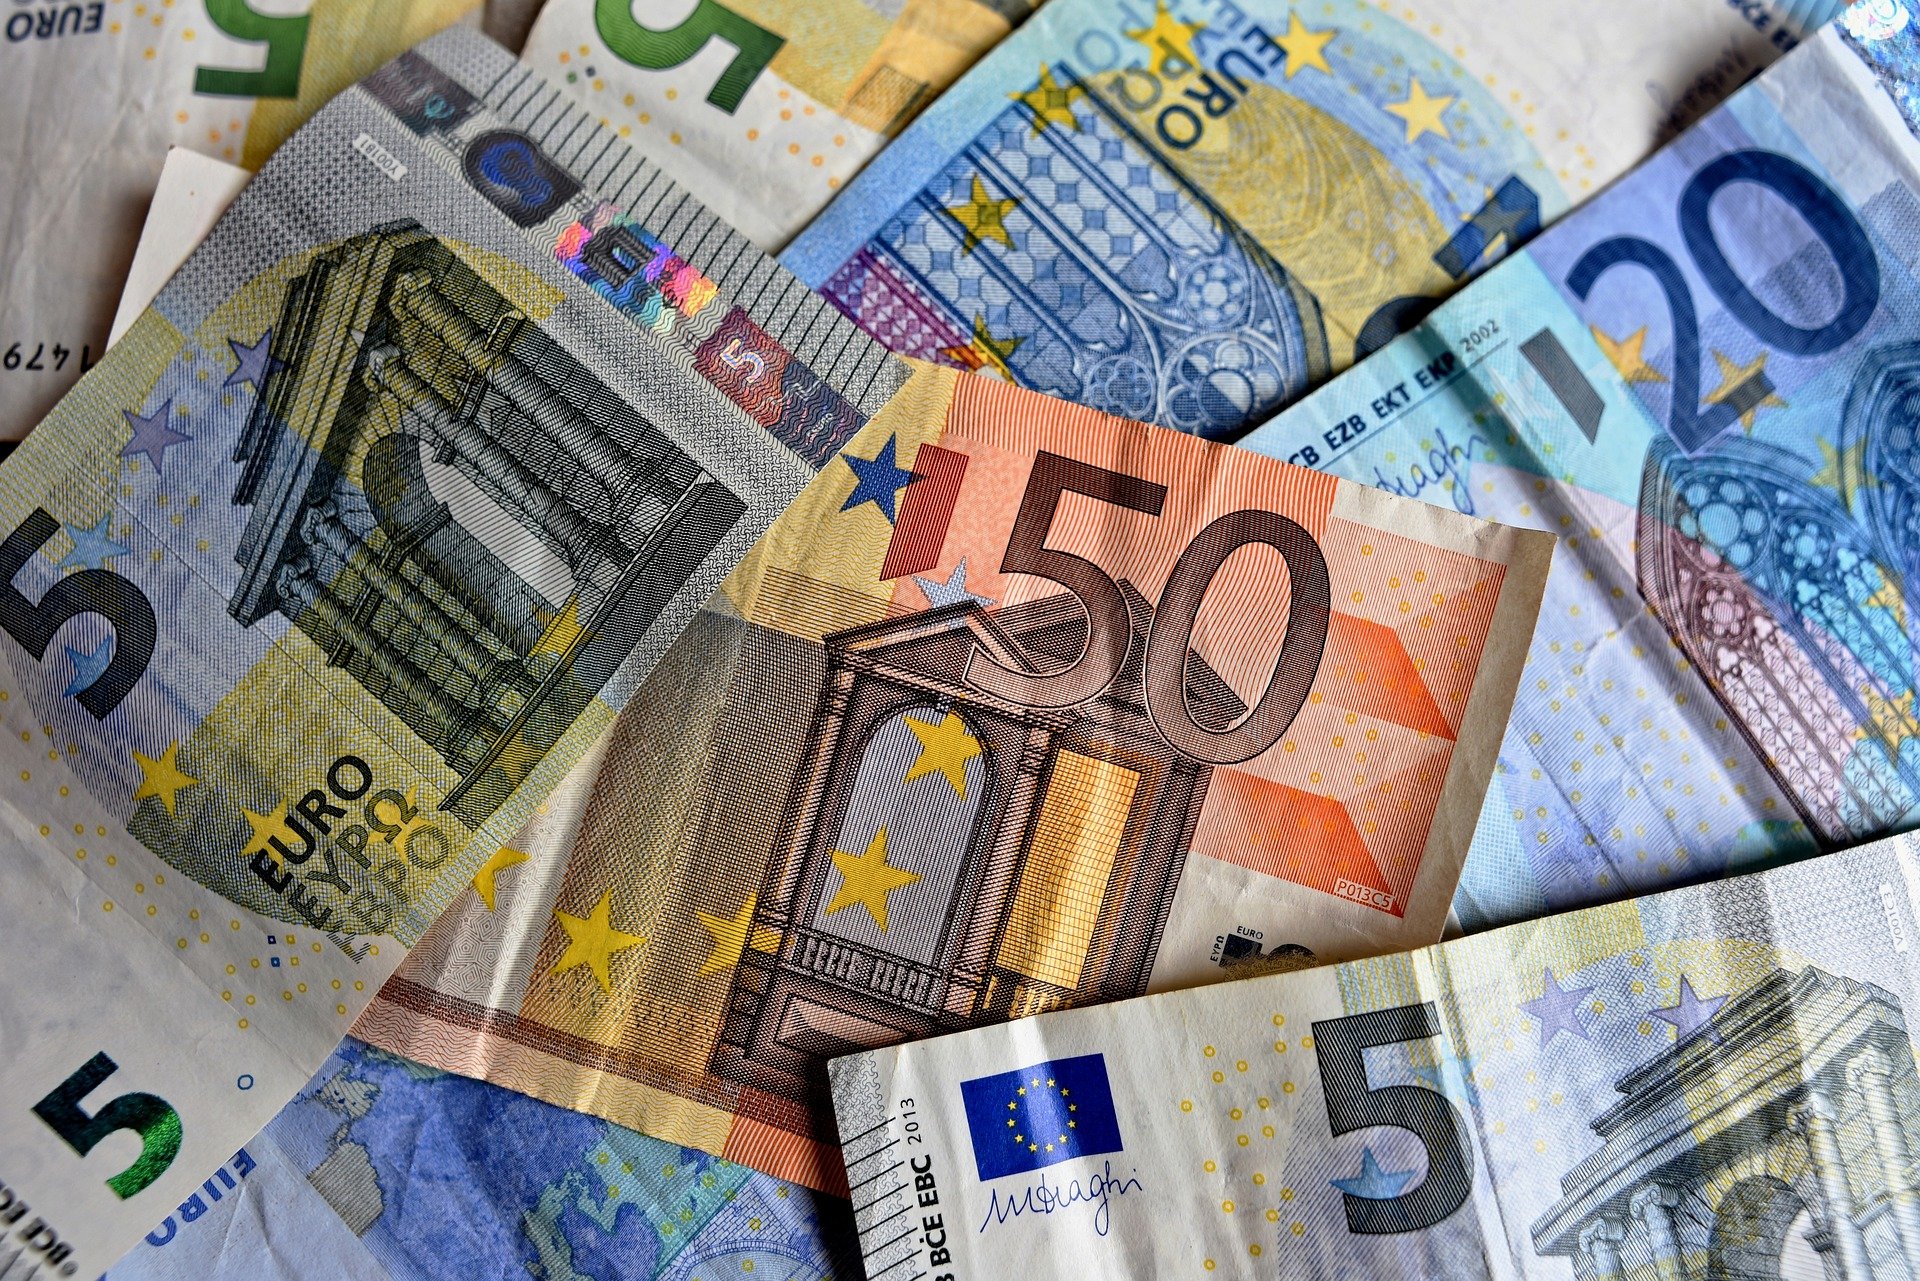 Újra történelmi csúcson van az euró árfolyama a lejjel szemben